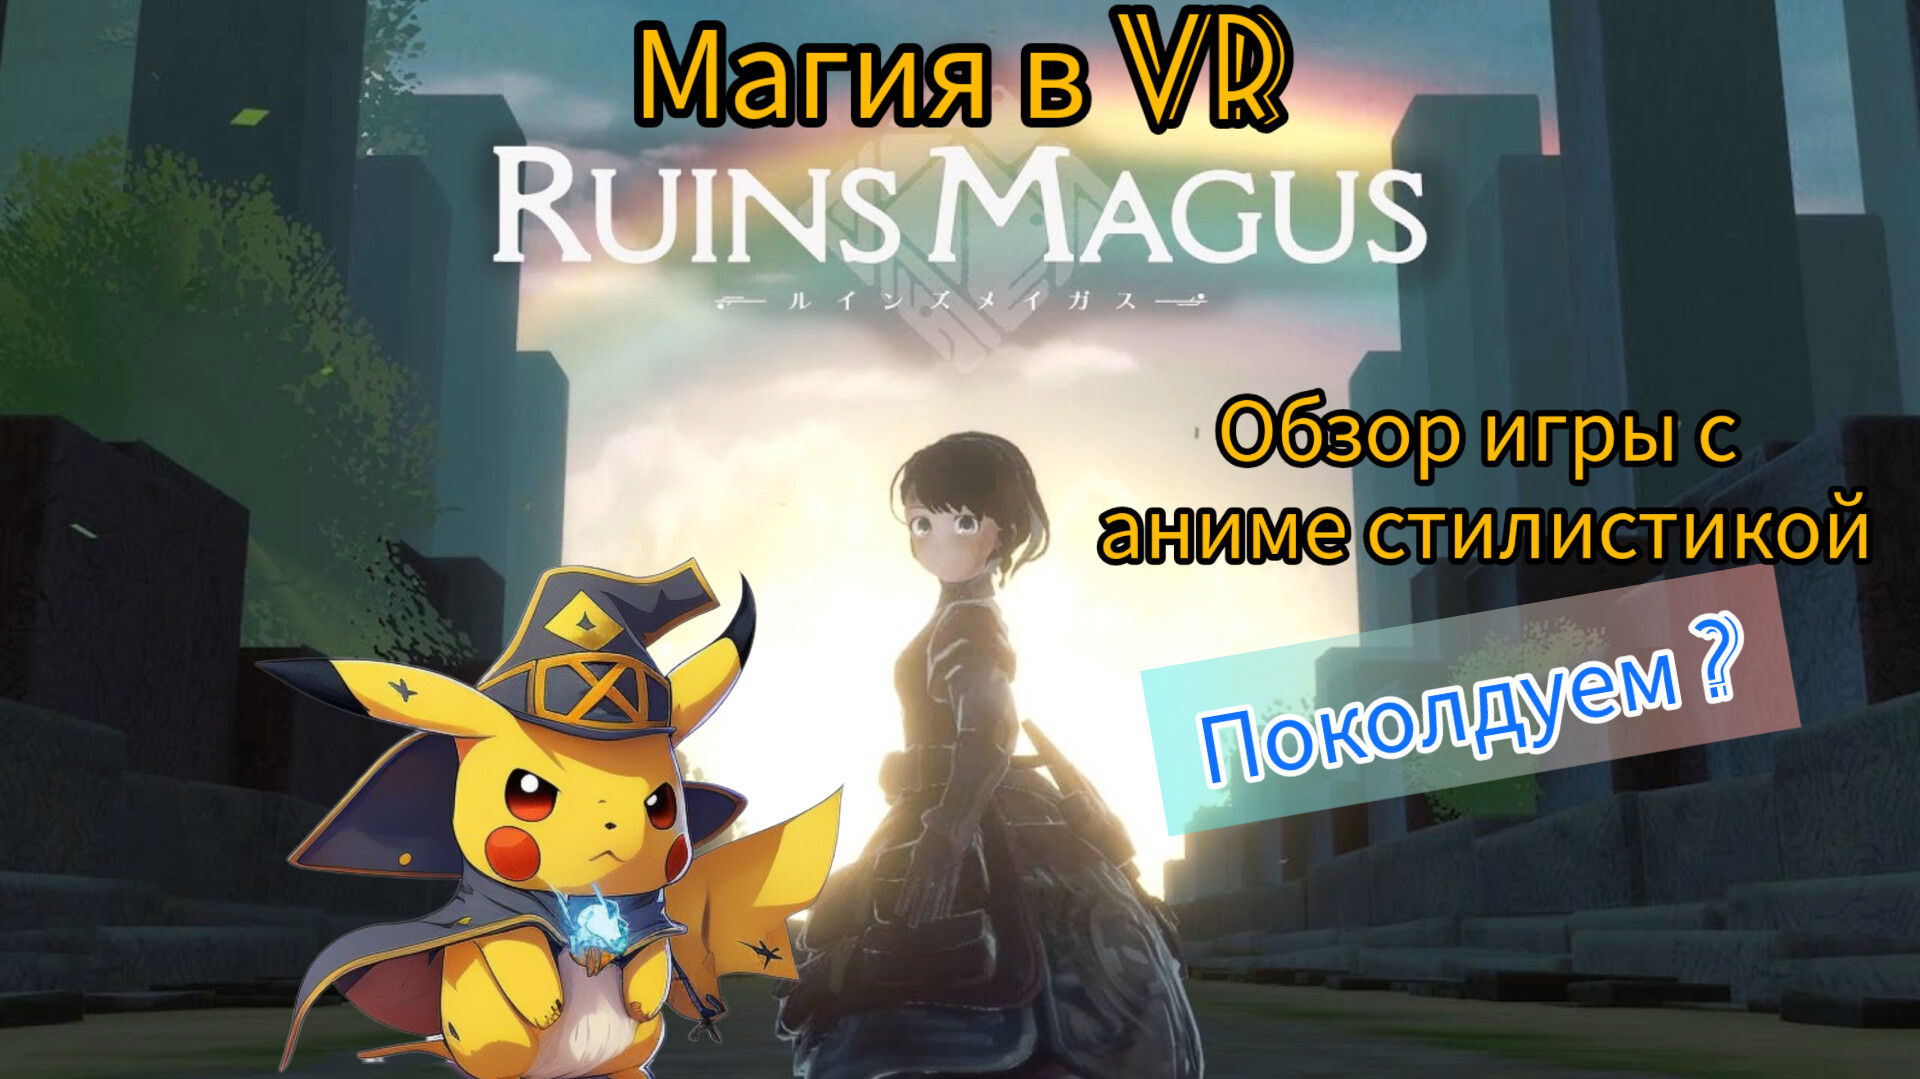 Обзор на достойную VR игру про магию, в стилистике аниме RUINS MAGUS.